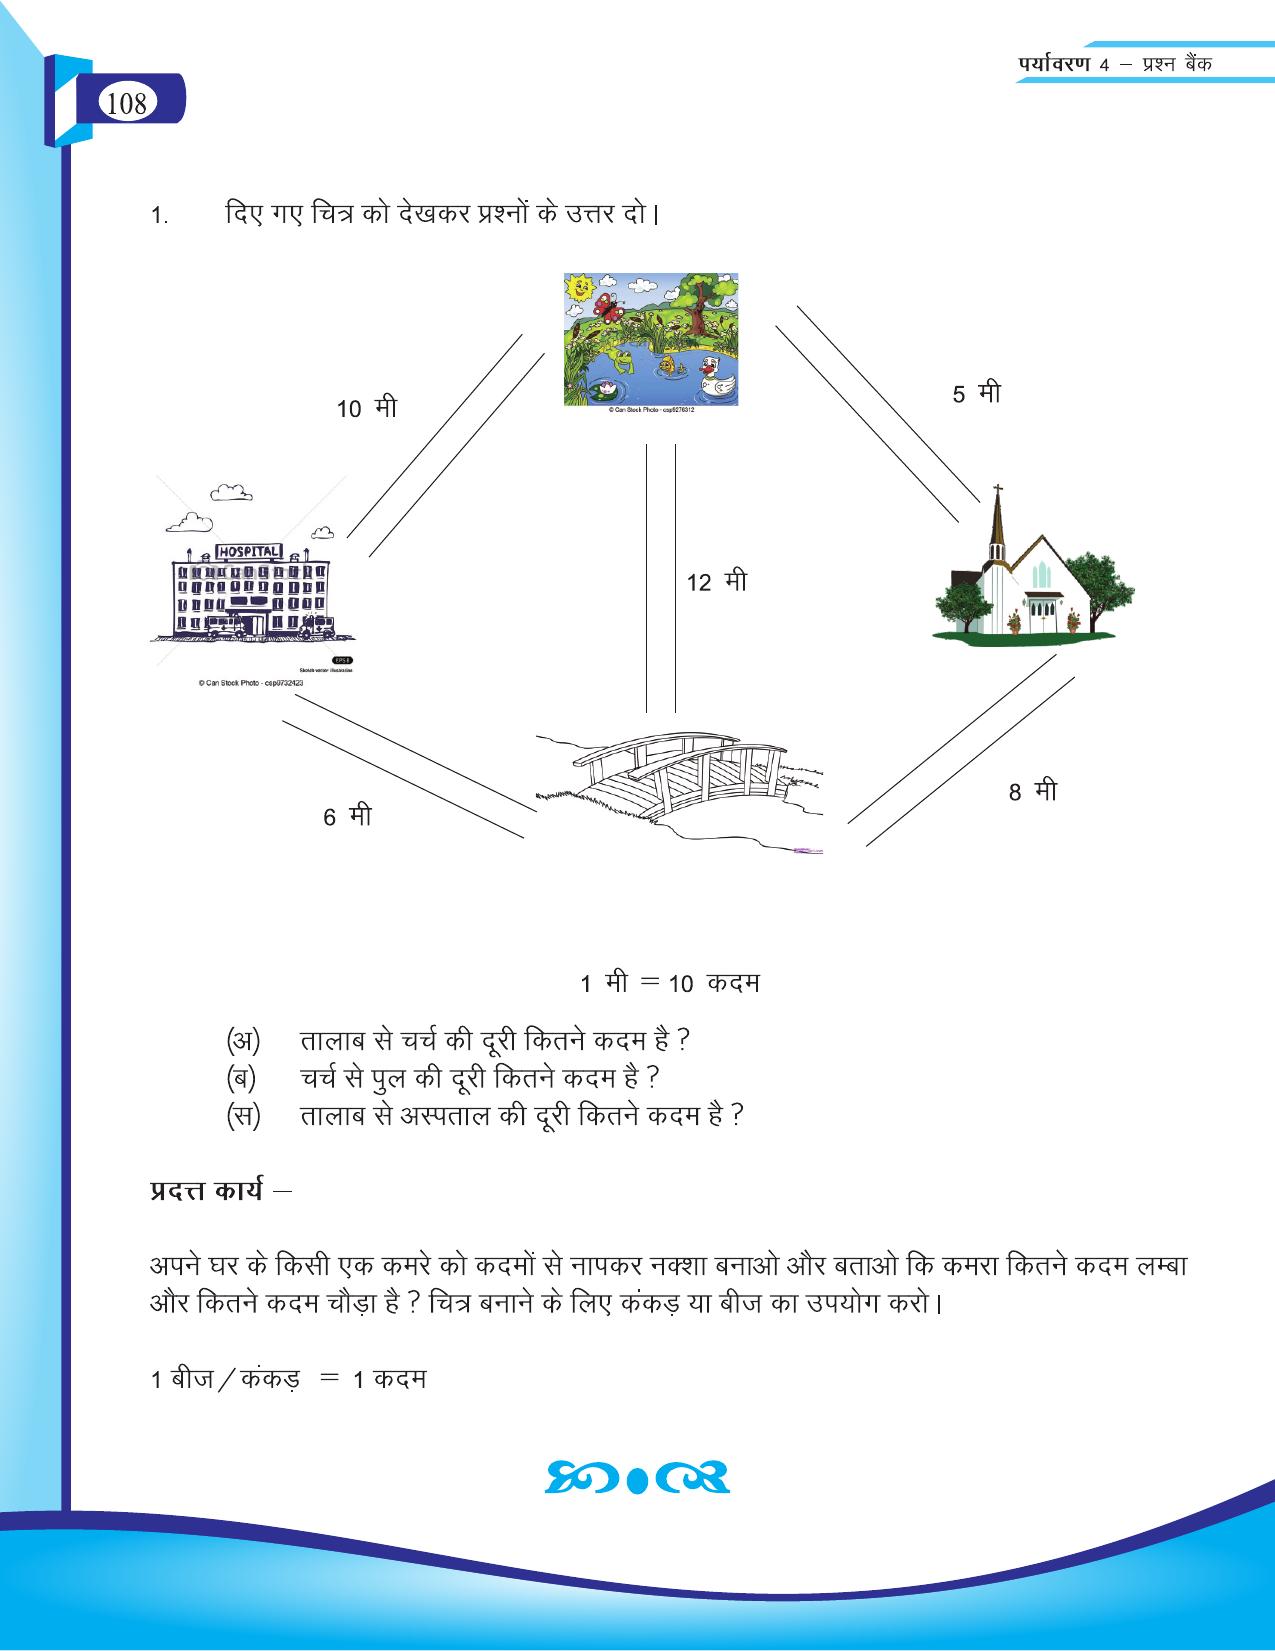 Chhattisgarh Board Class 4 EVS Question Bank 2015-16 - Page 37